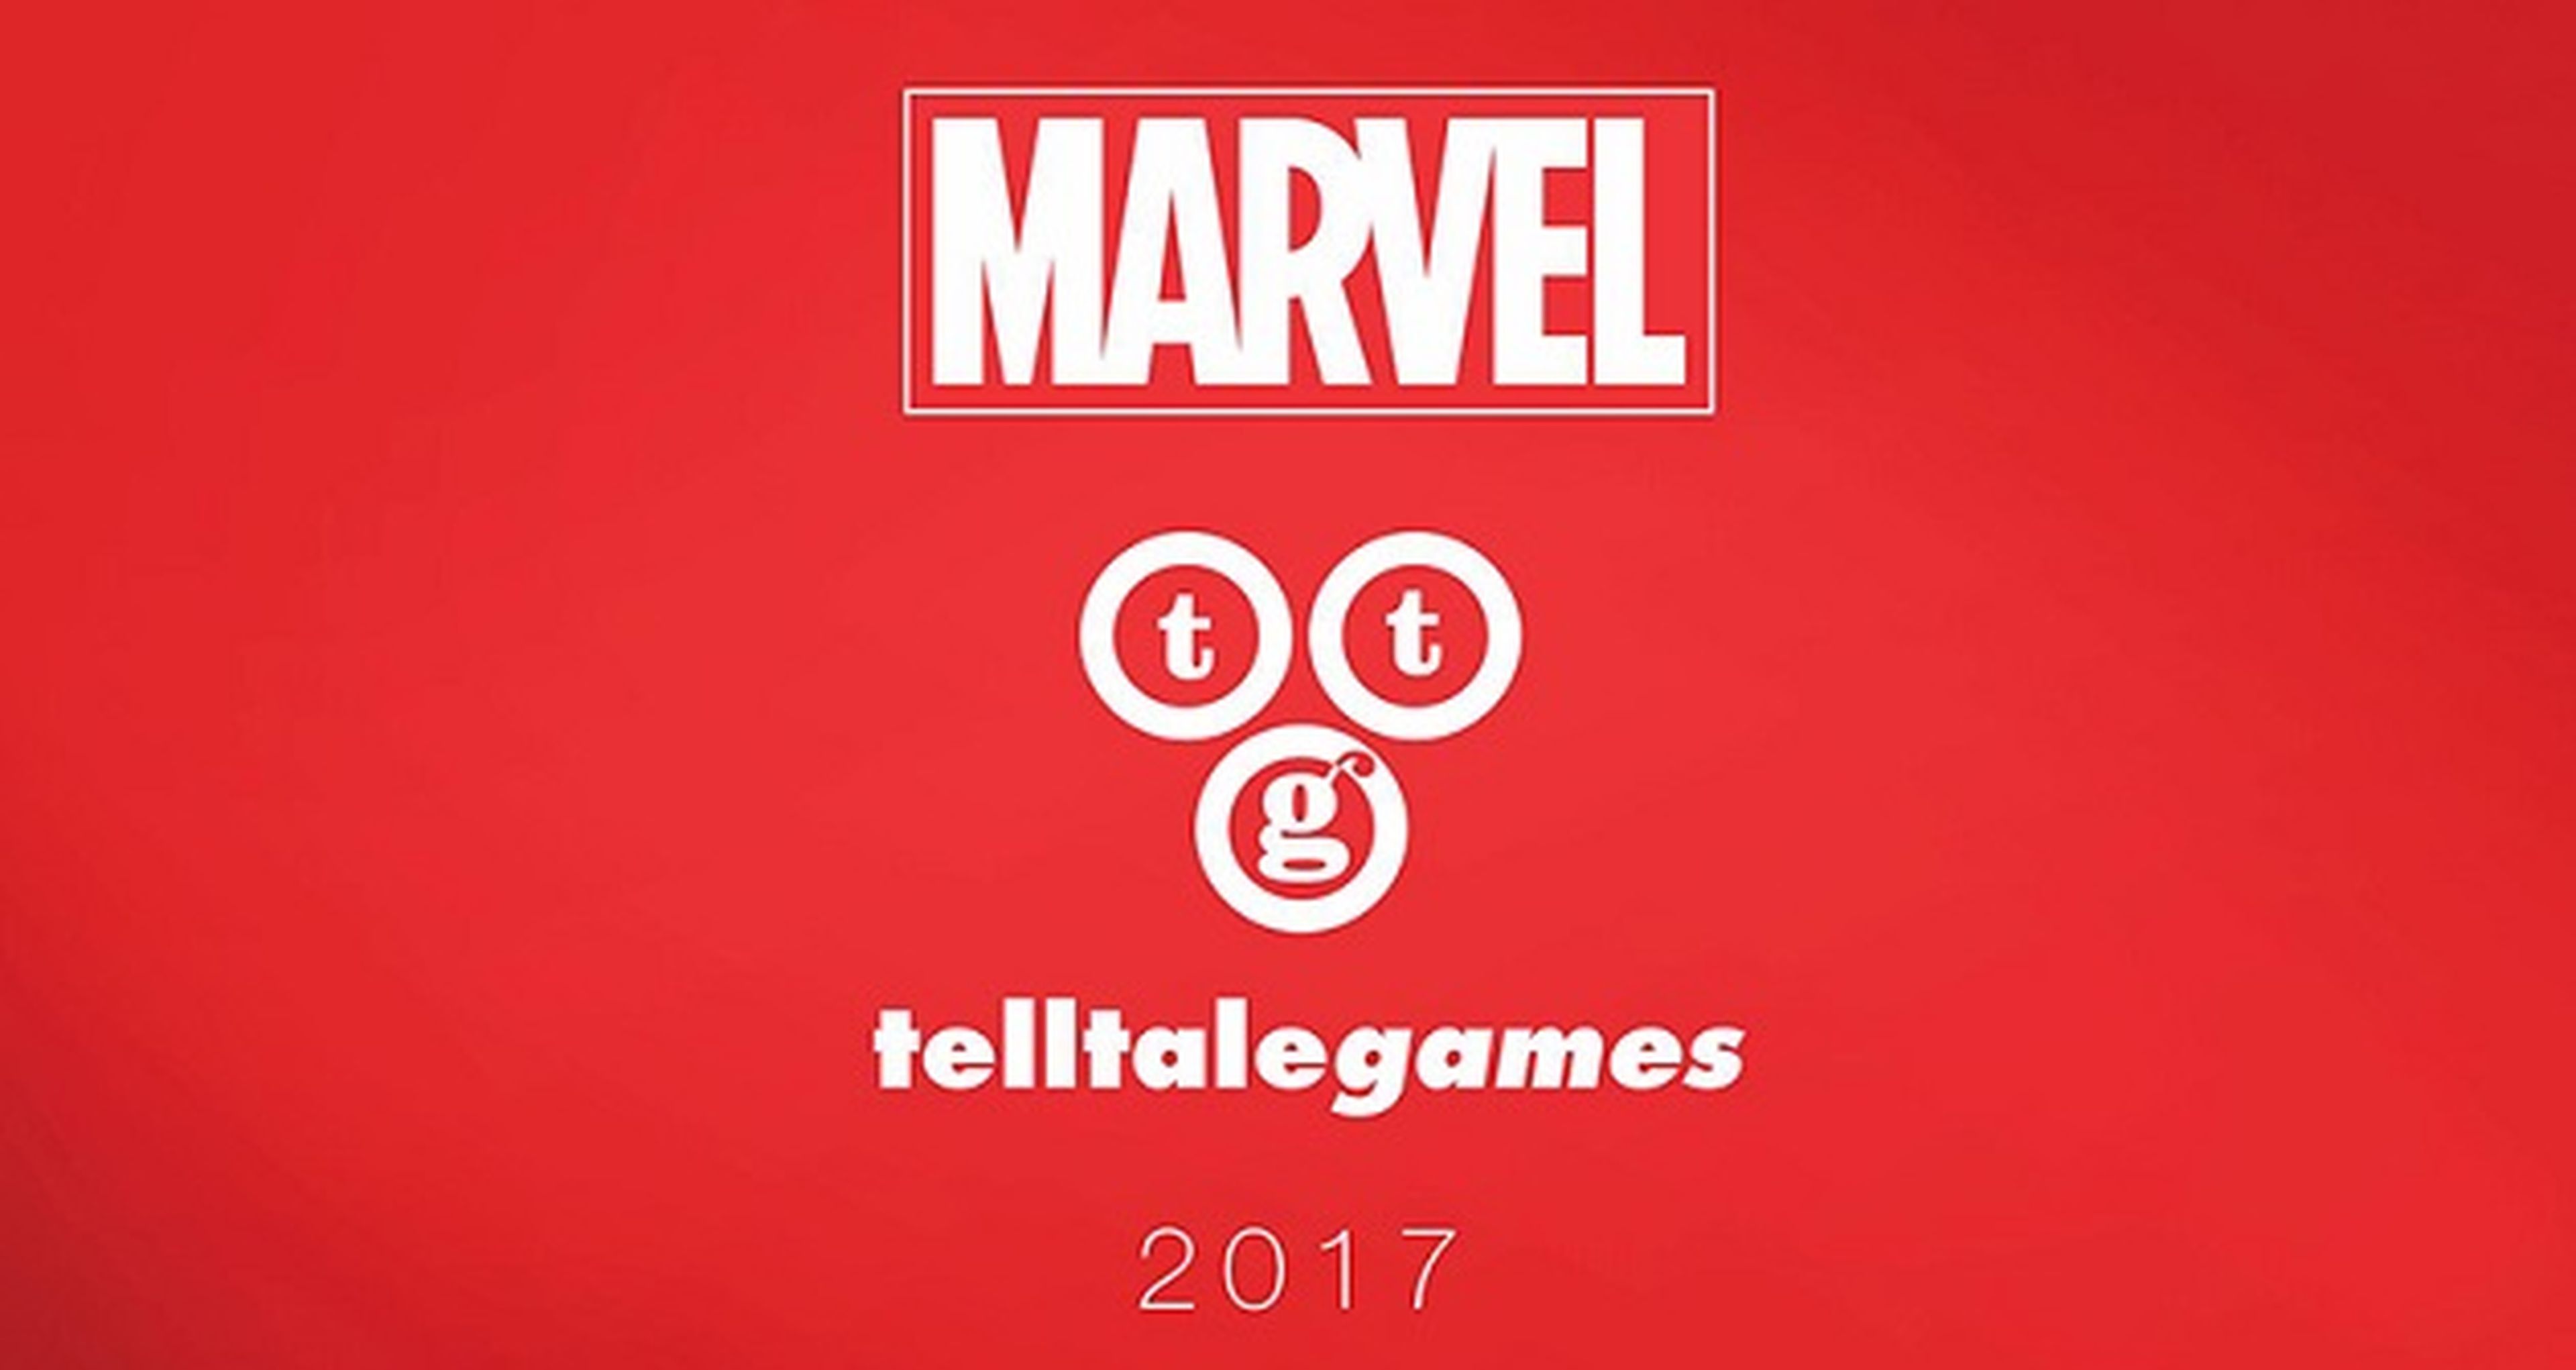 Marvel y Telltale Games preparan un juego para 2017